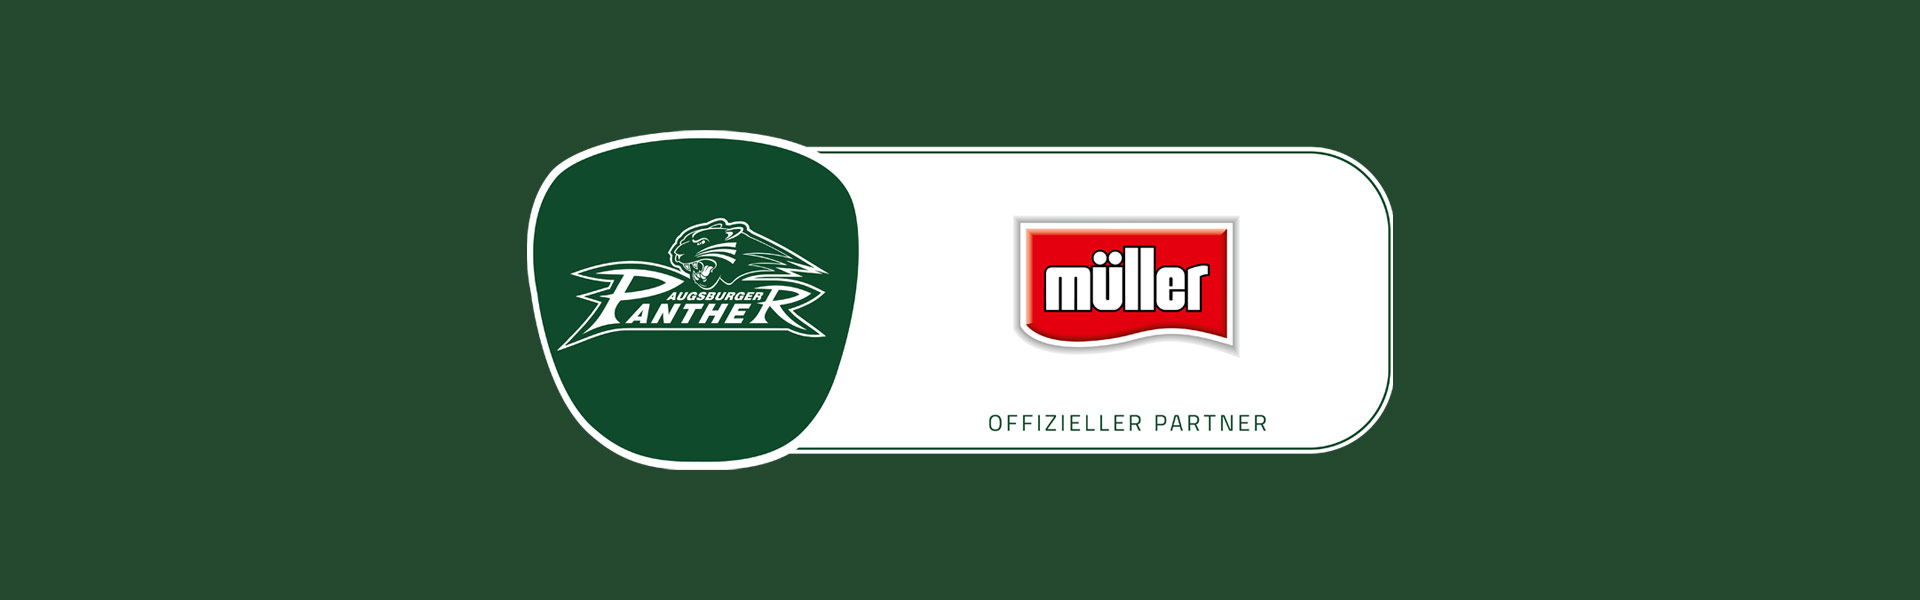 Die Molkerei Alois Müller wird Top-Partner der Augsburger Panther